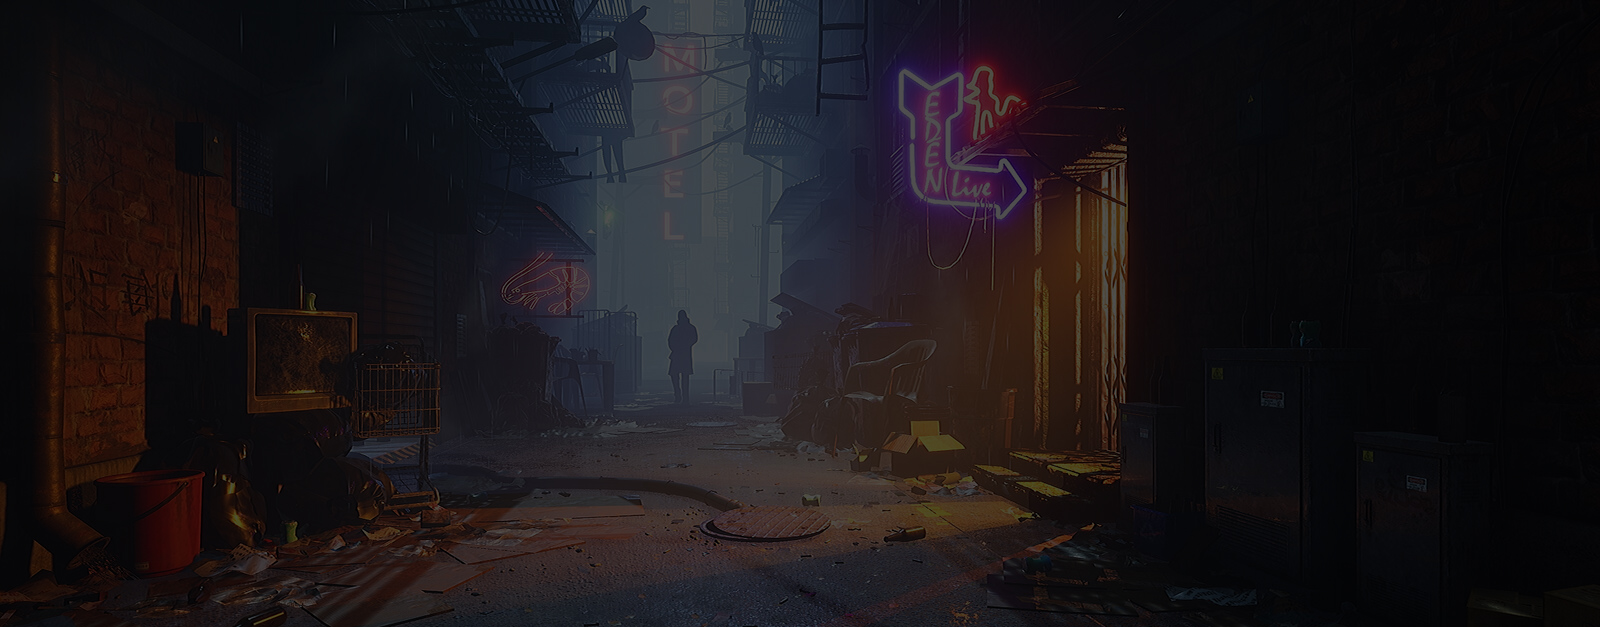 Ett verk föreställande en scen från mörk gränd med neonskyltar skapad av en studerande inom spelutveckling på The Game Assembly